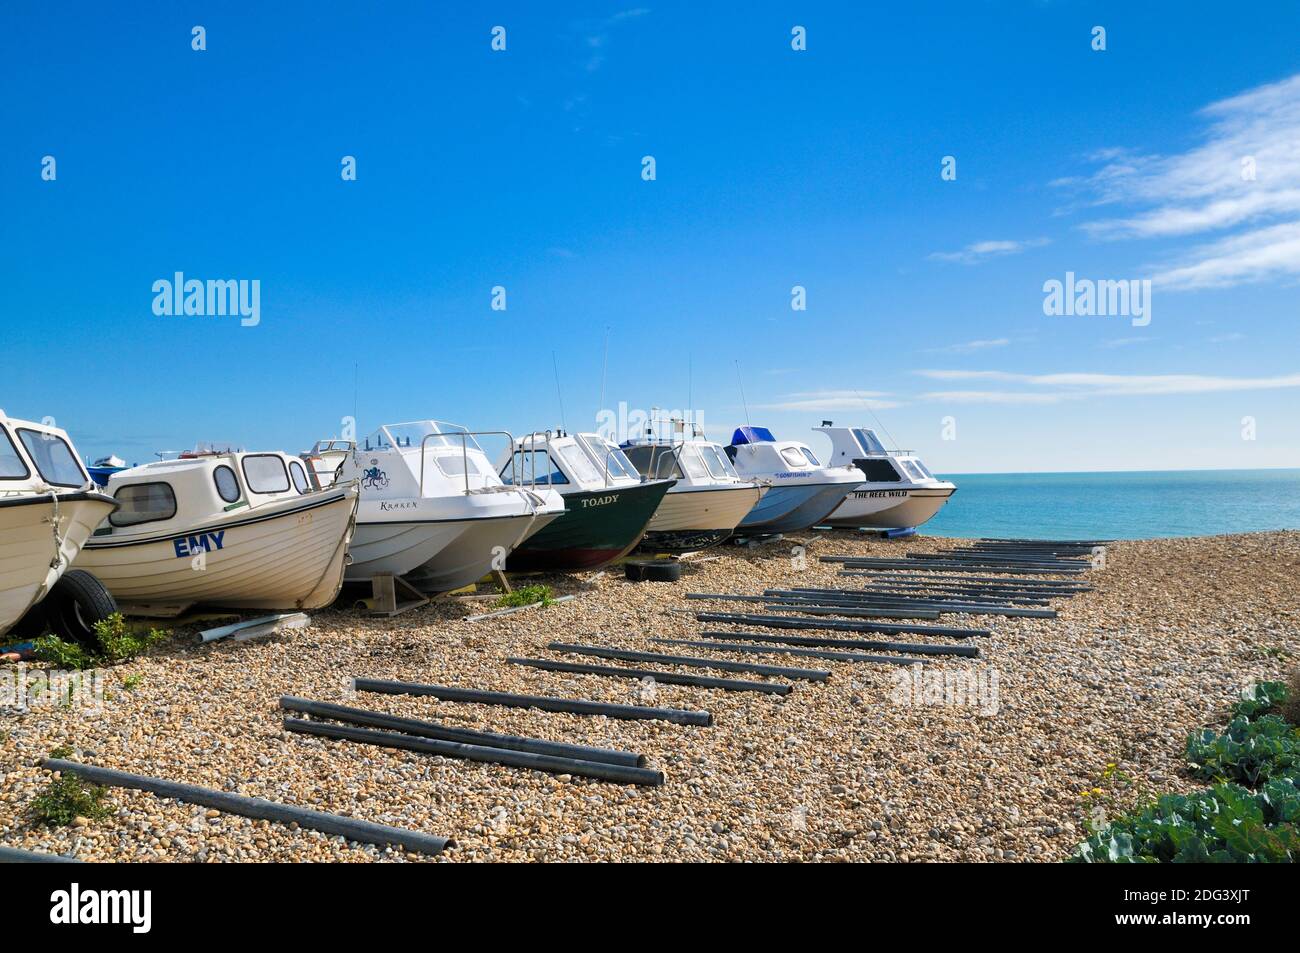 Une ligne de bateaux sur la plage de galets par une journée ensoleillée, Eastbourne, East Sussex, Angleterre, Royaume-Uni Banque D'Images